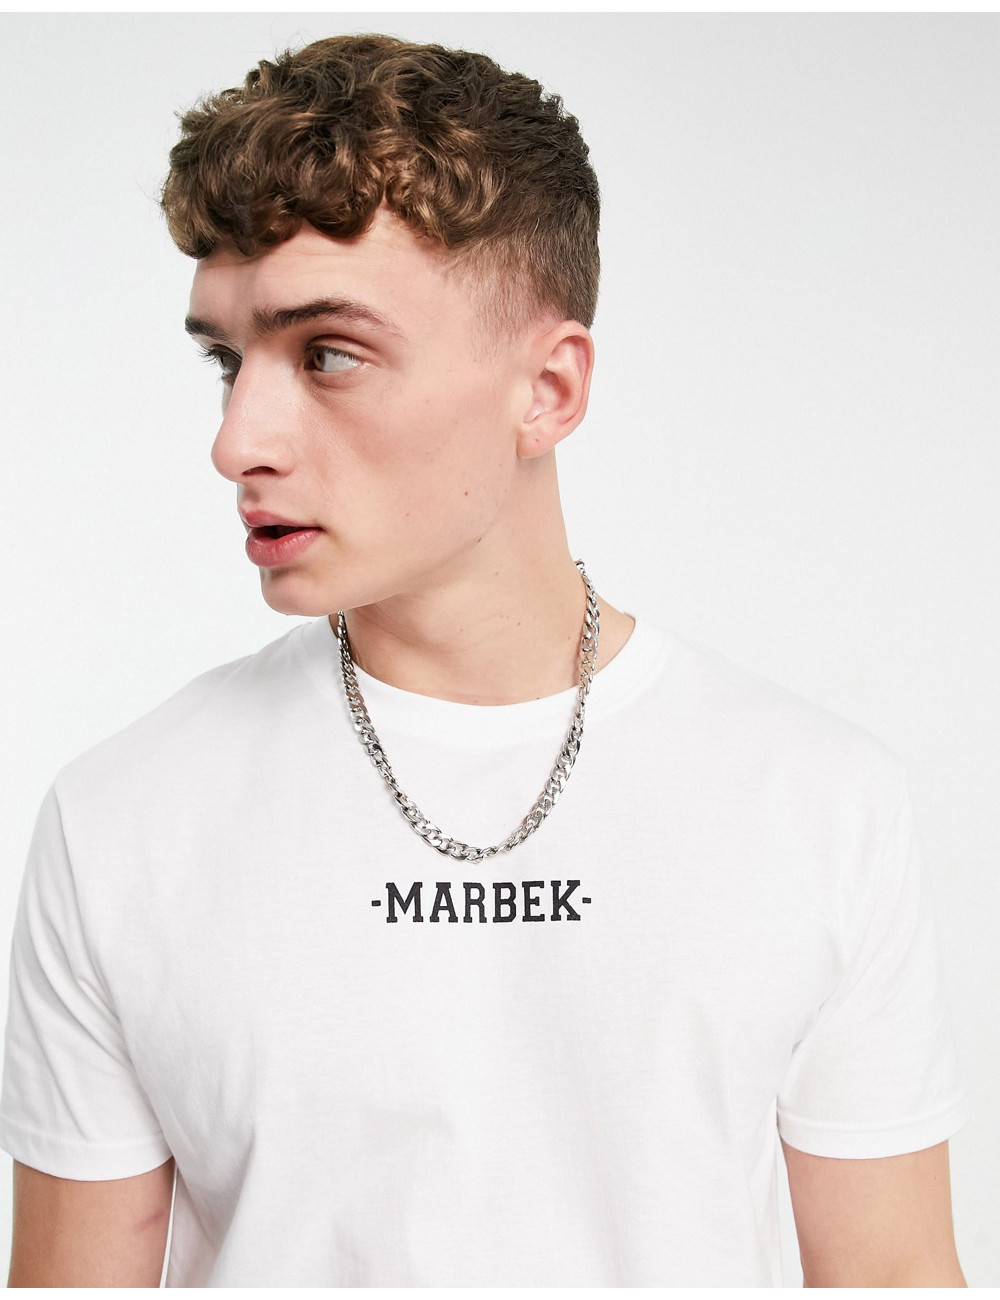 Marbek essentials t-shirt...